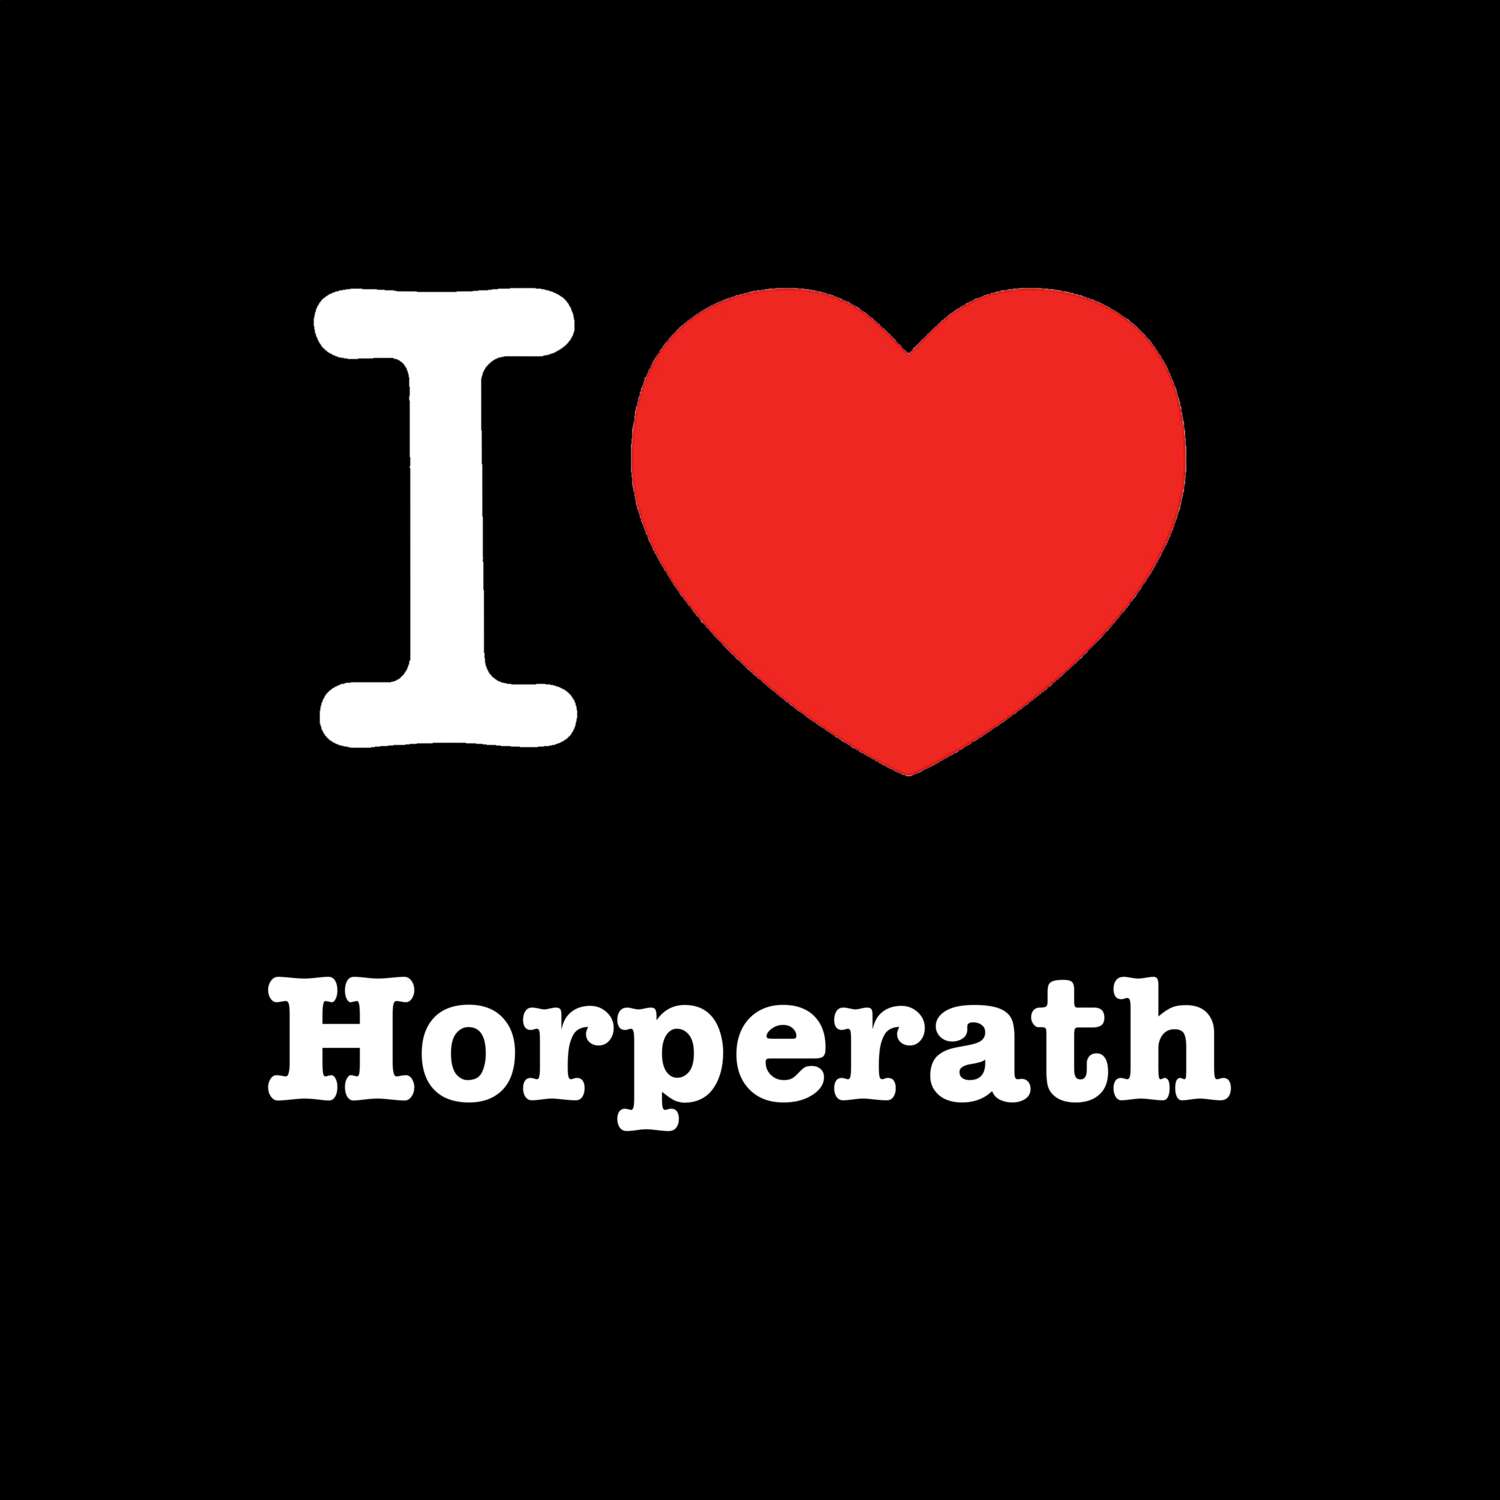 Horperath T-Shirt »I love«